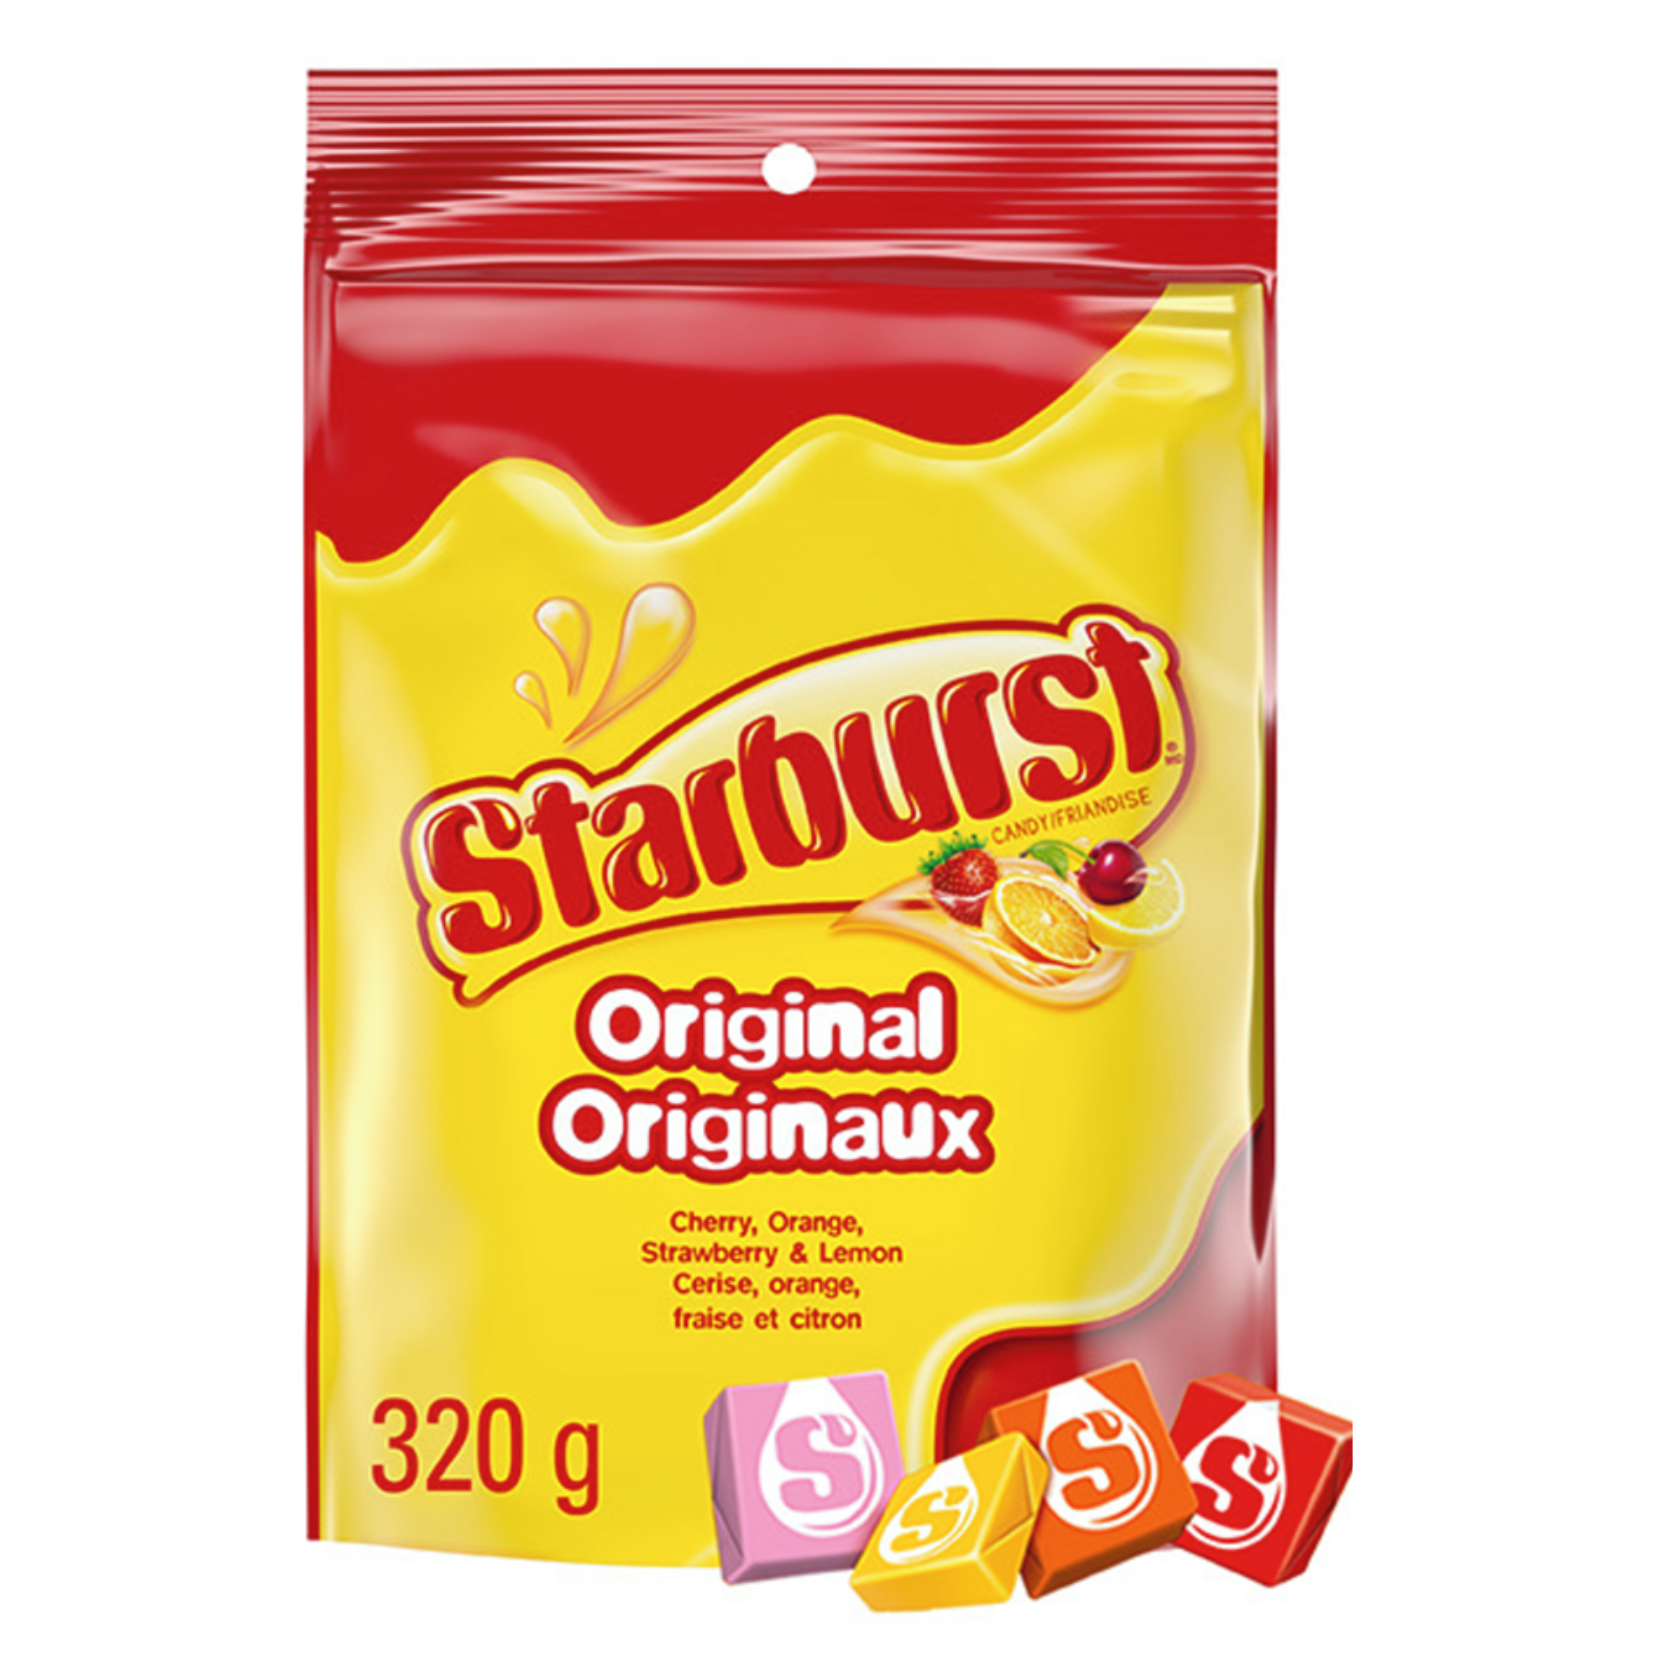 Starburst Original Candy 320g